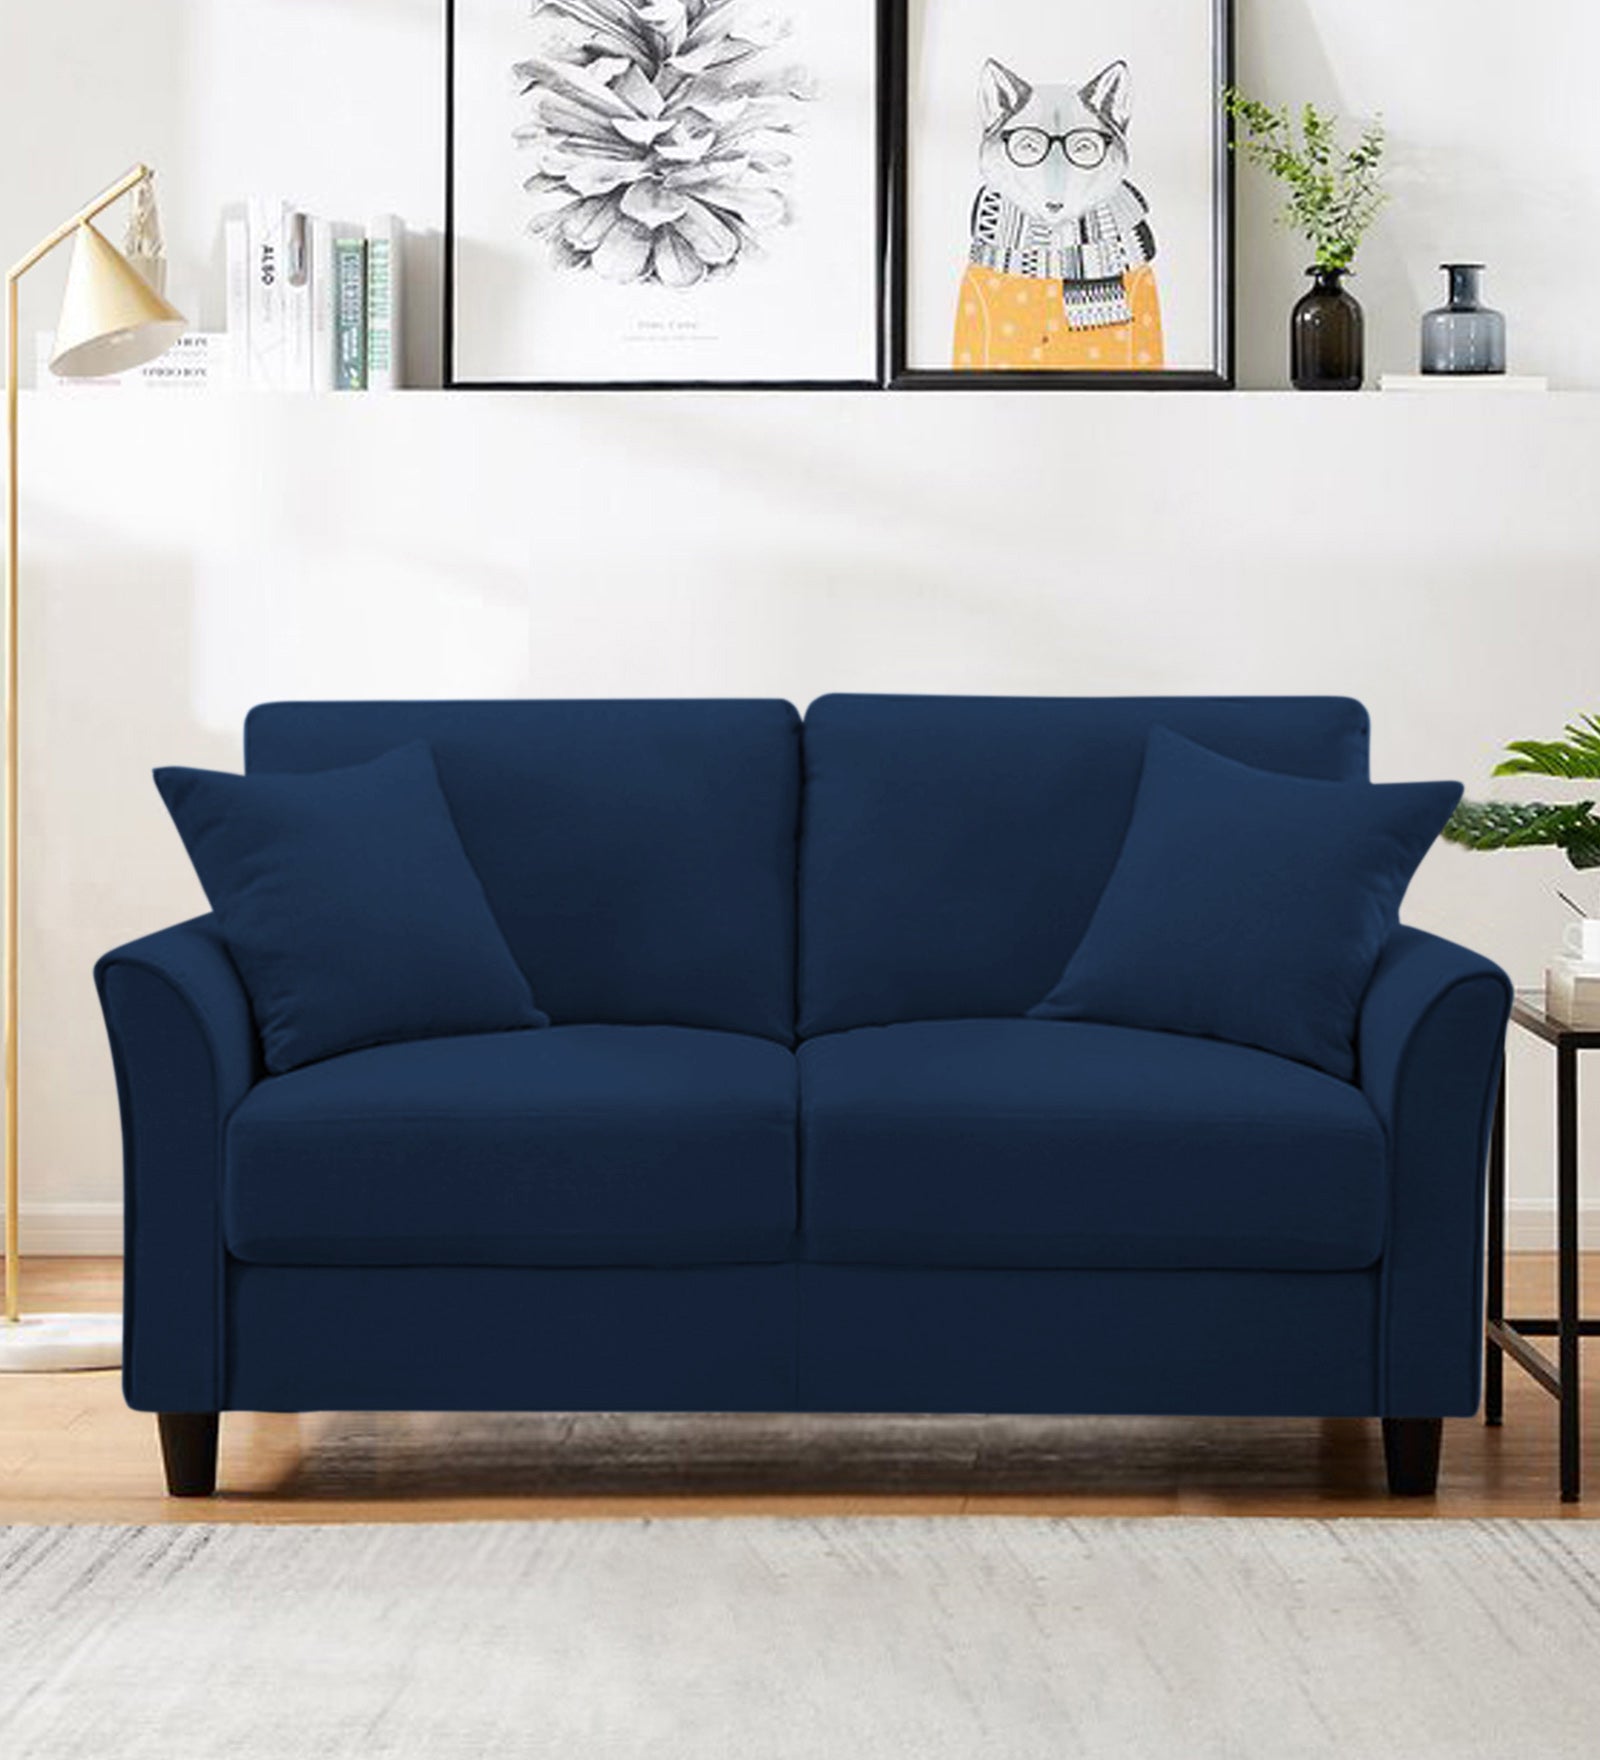 Daroo Velvet 2 Seater Sofa In Imperial Blue Colour